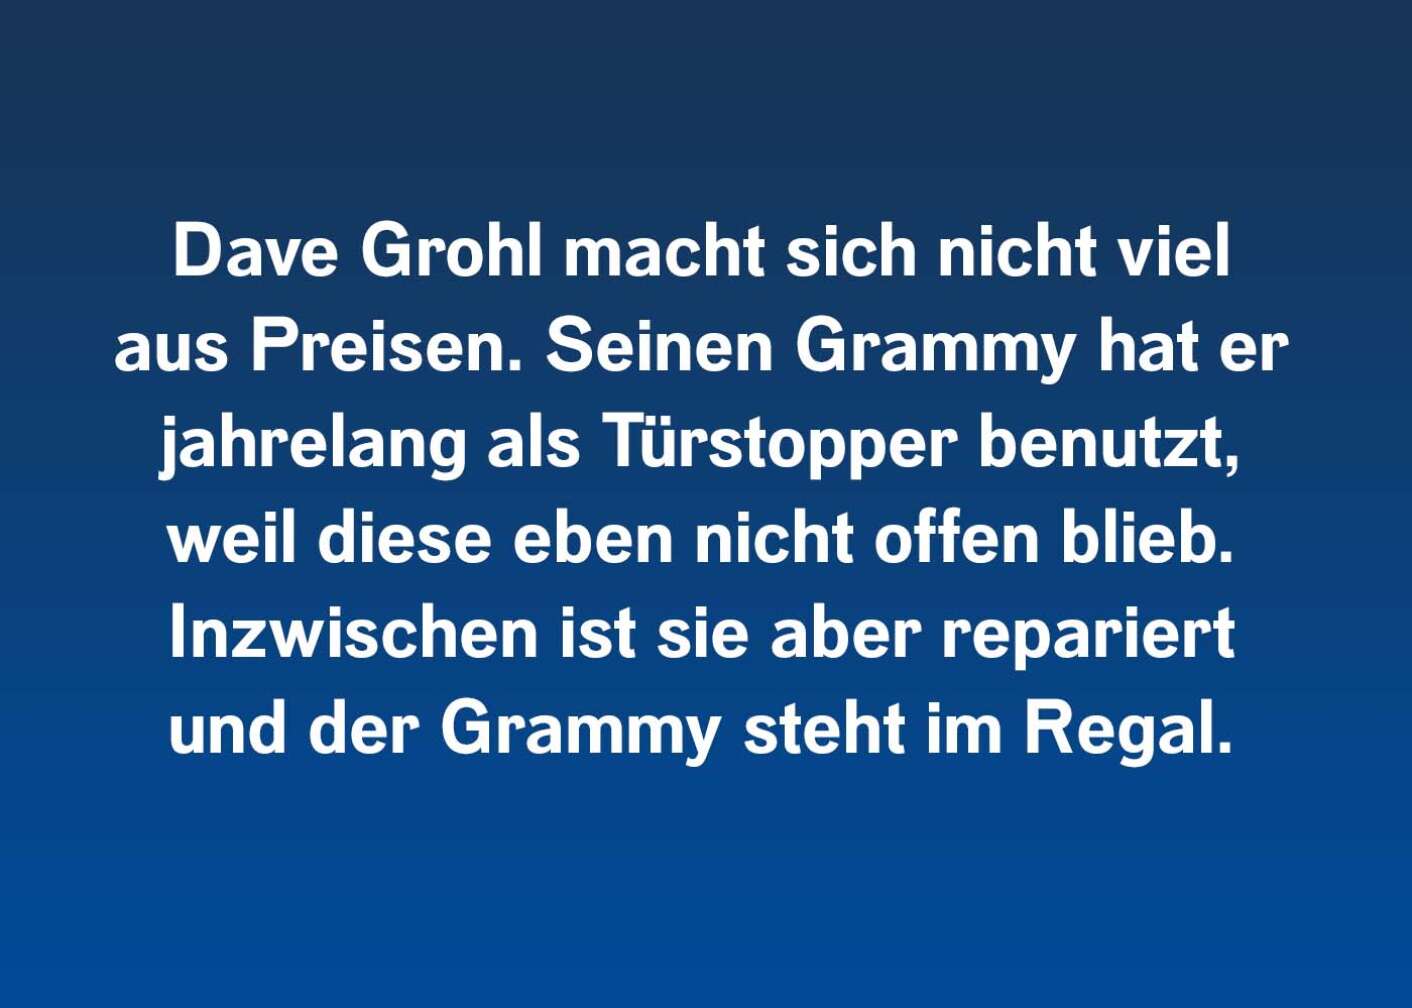 Dave Grohl macht sich nicht viel aus Preisen. Seinen Grammy hat er jahrelang als Türstopper benutzt, weil diese eben nicht offen blieb. Inzwischen ist sie aber repariert und der Grammy steht im Regal.